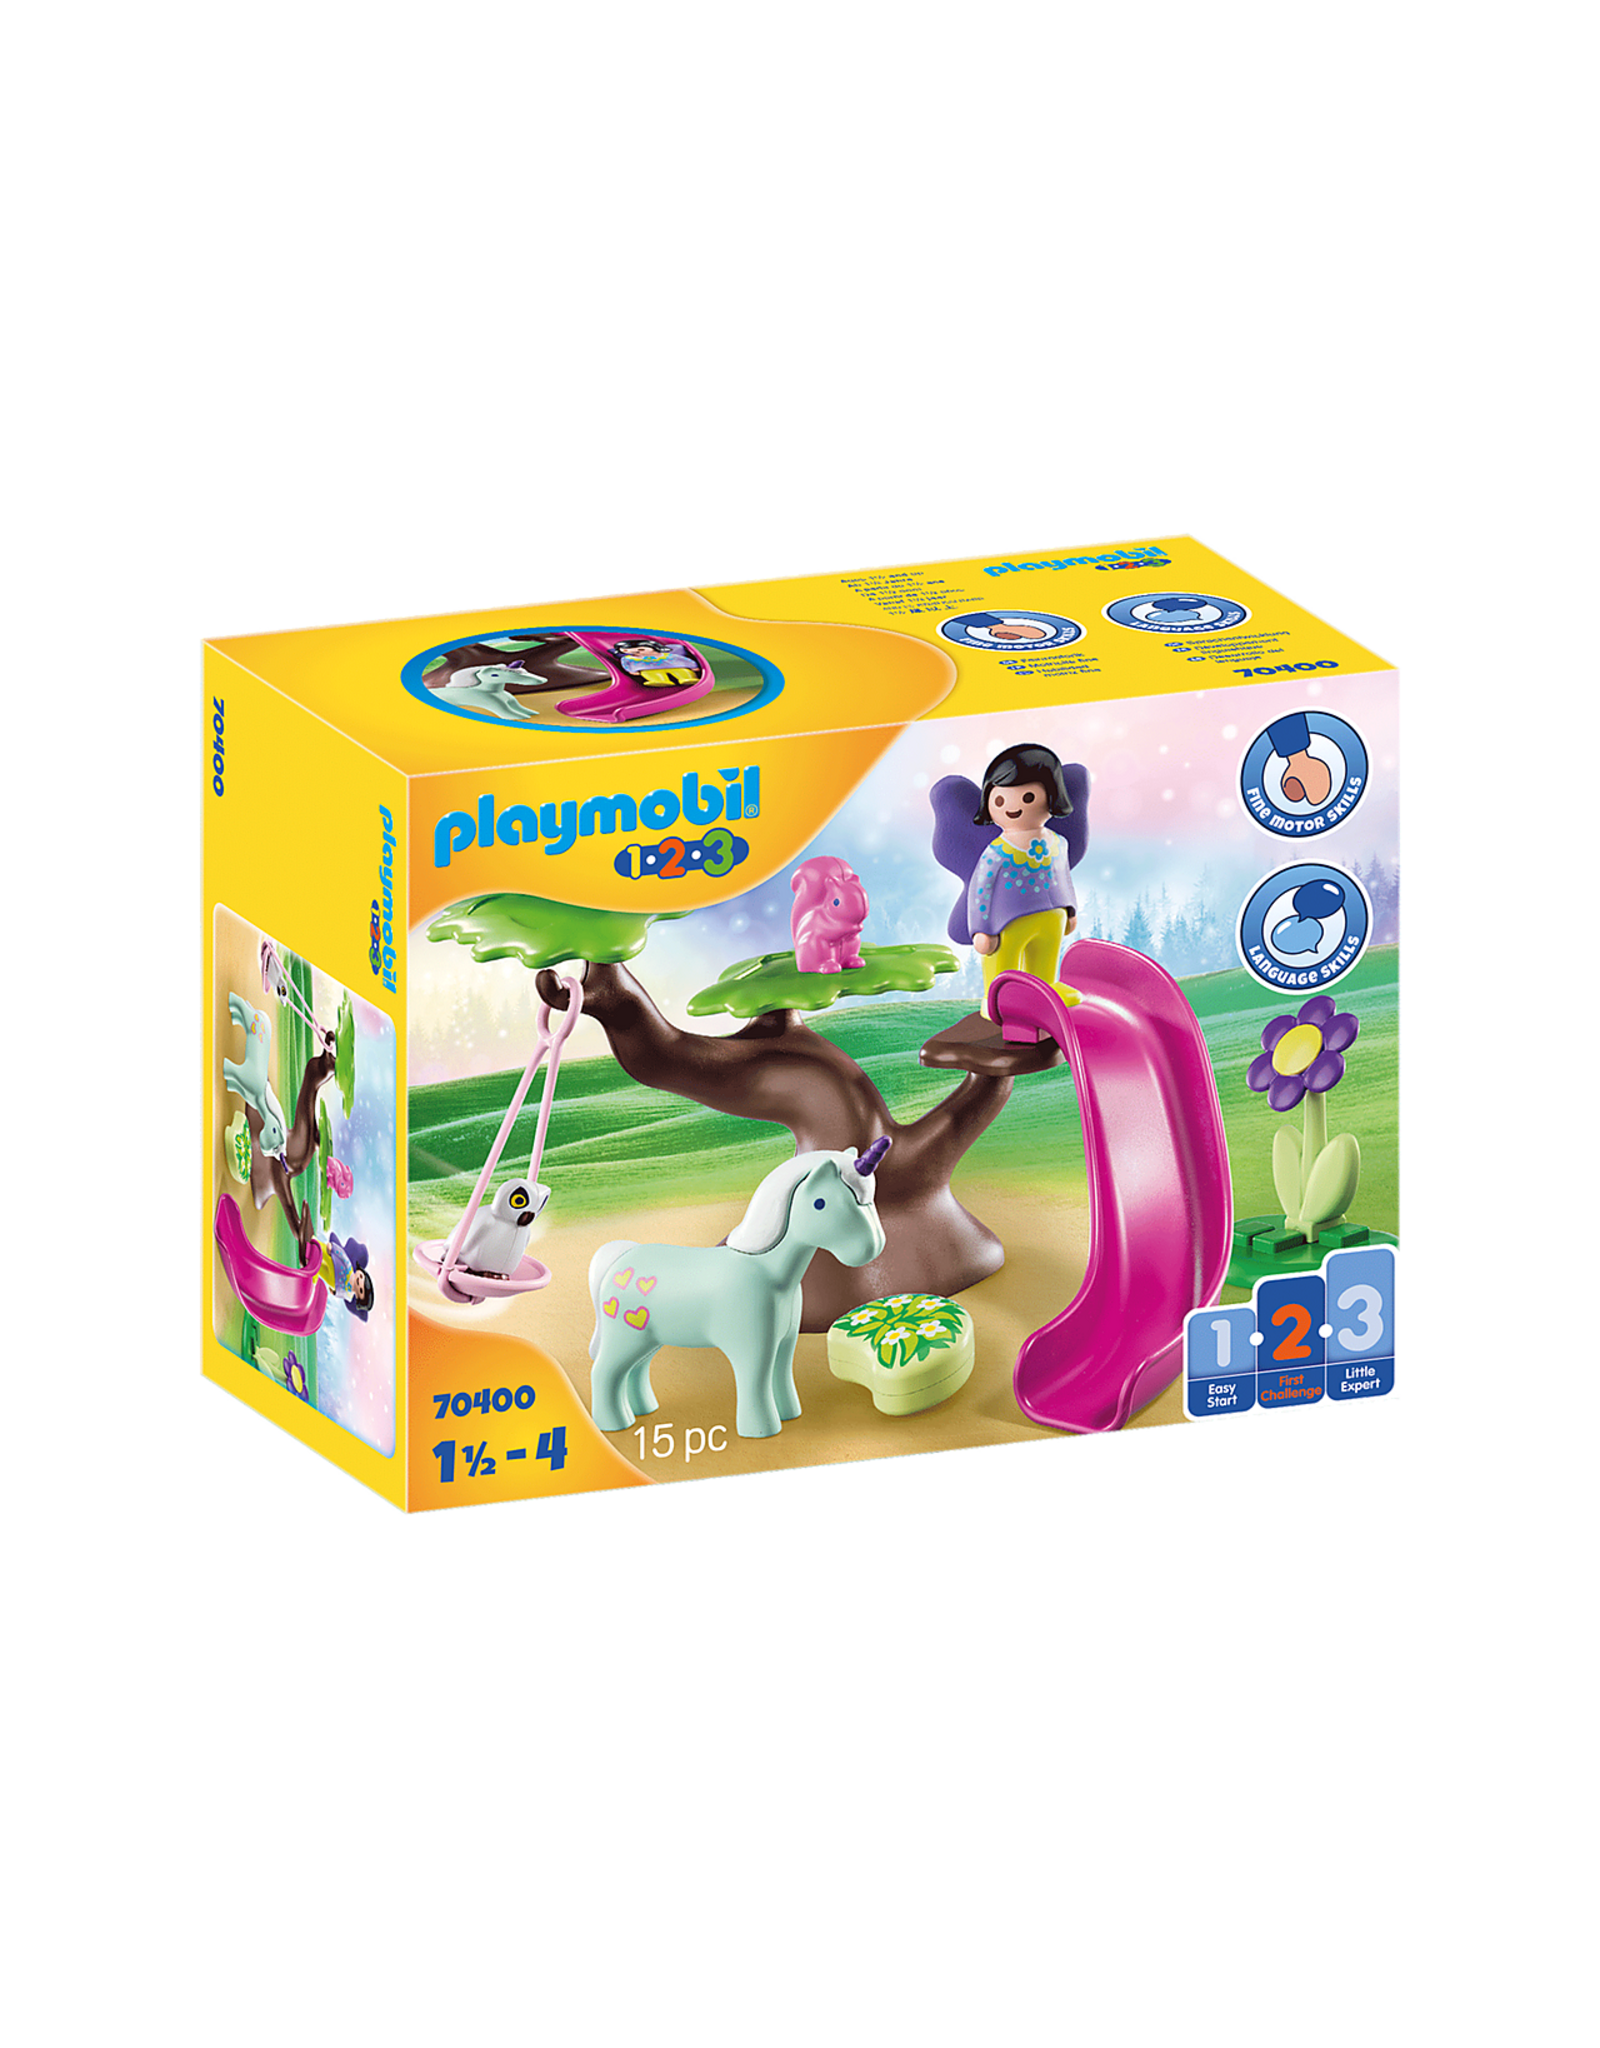 Playmobil Playmobil 1.2.3. 70400 Fairy Playground